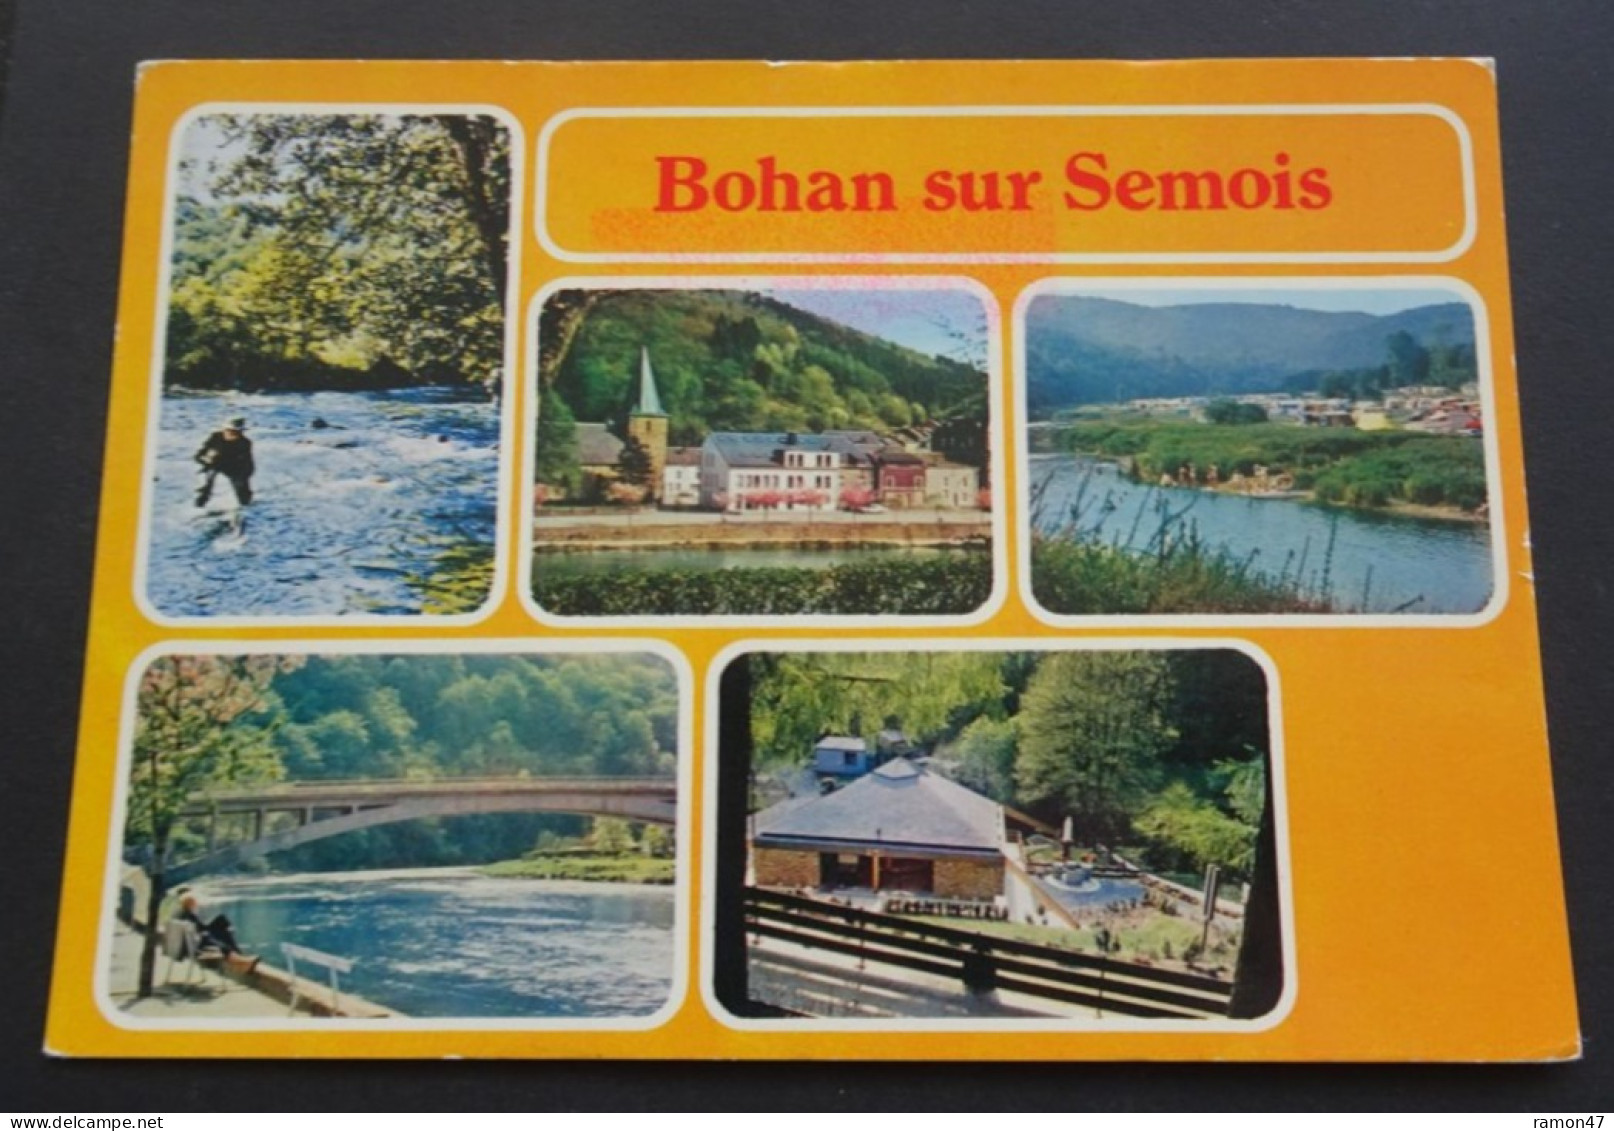 Bohan Sur Semois - Combier Imprimeur Mâcon "CIM" - Vresse-sur-Semois